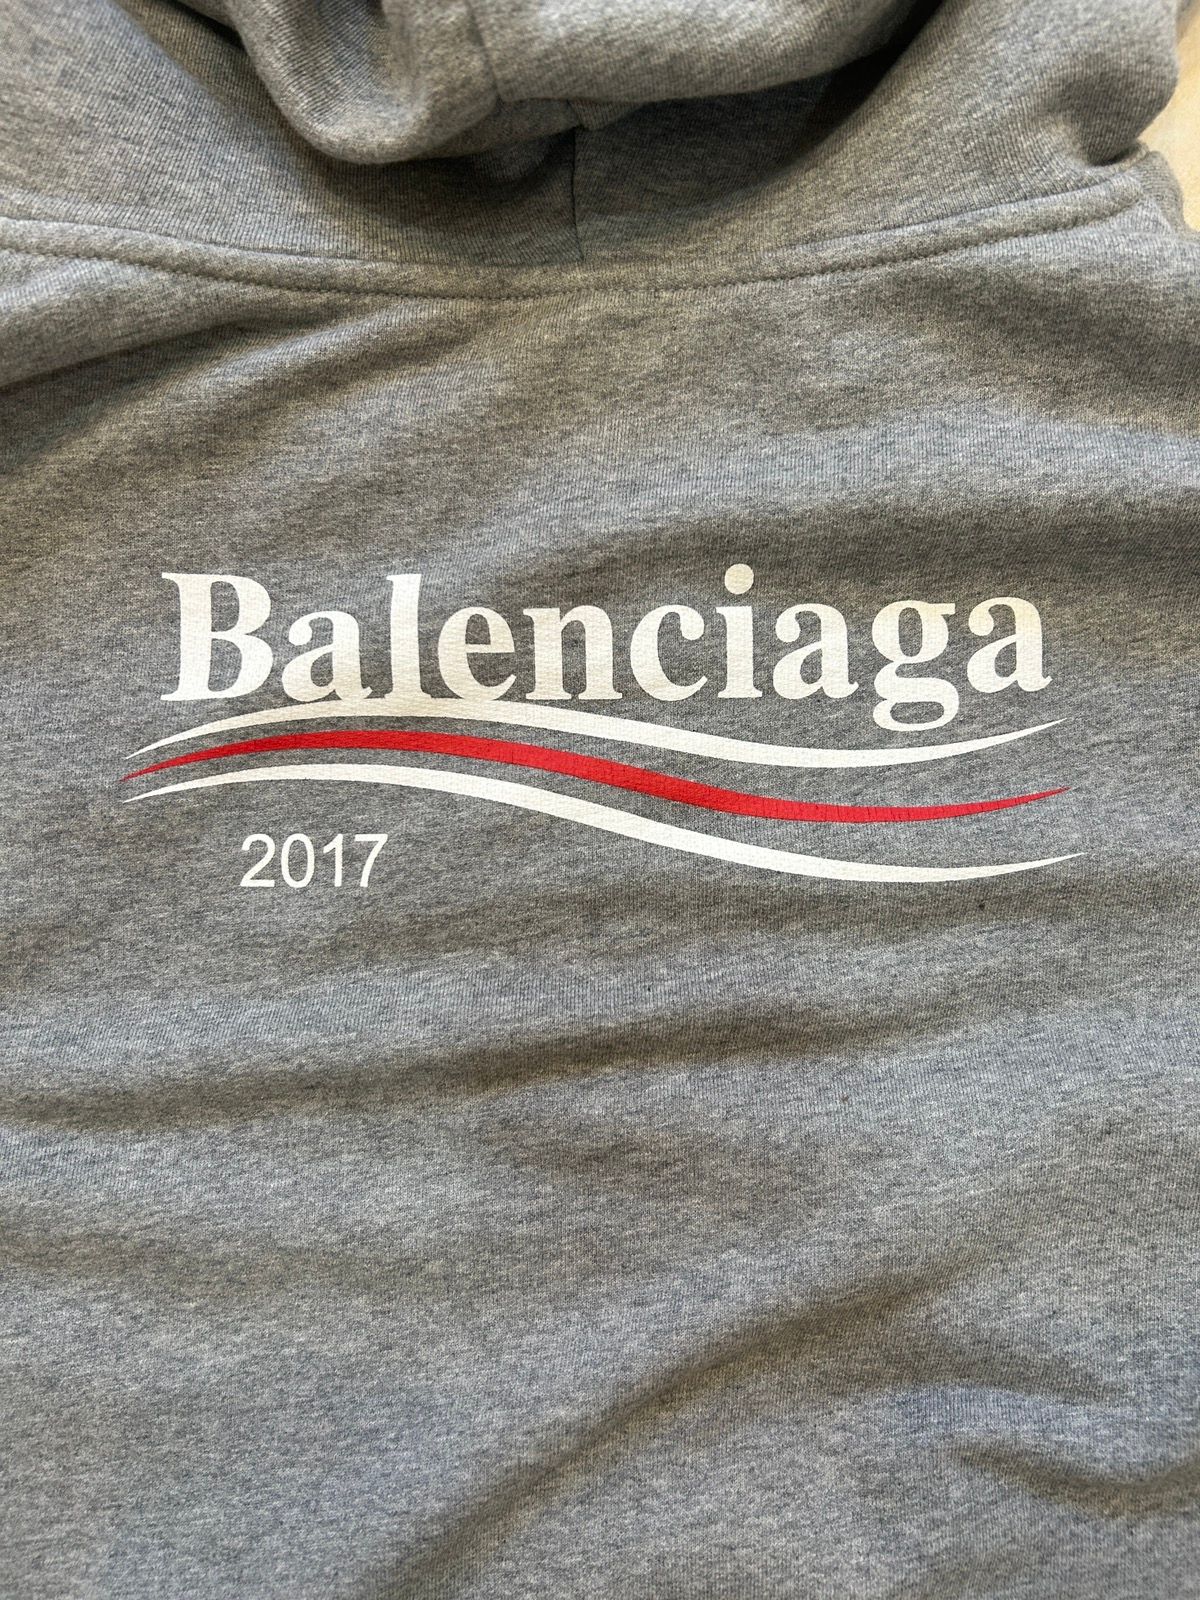 Balenciaga BALENCIAGA CAMPAIGN 2017 ZIP UP Size US L / EU 52-54 / 3 - 4 Thumbnail